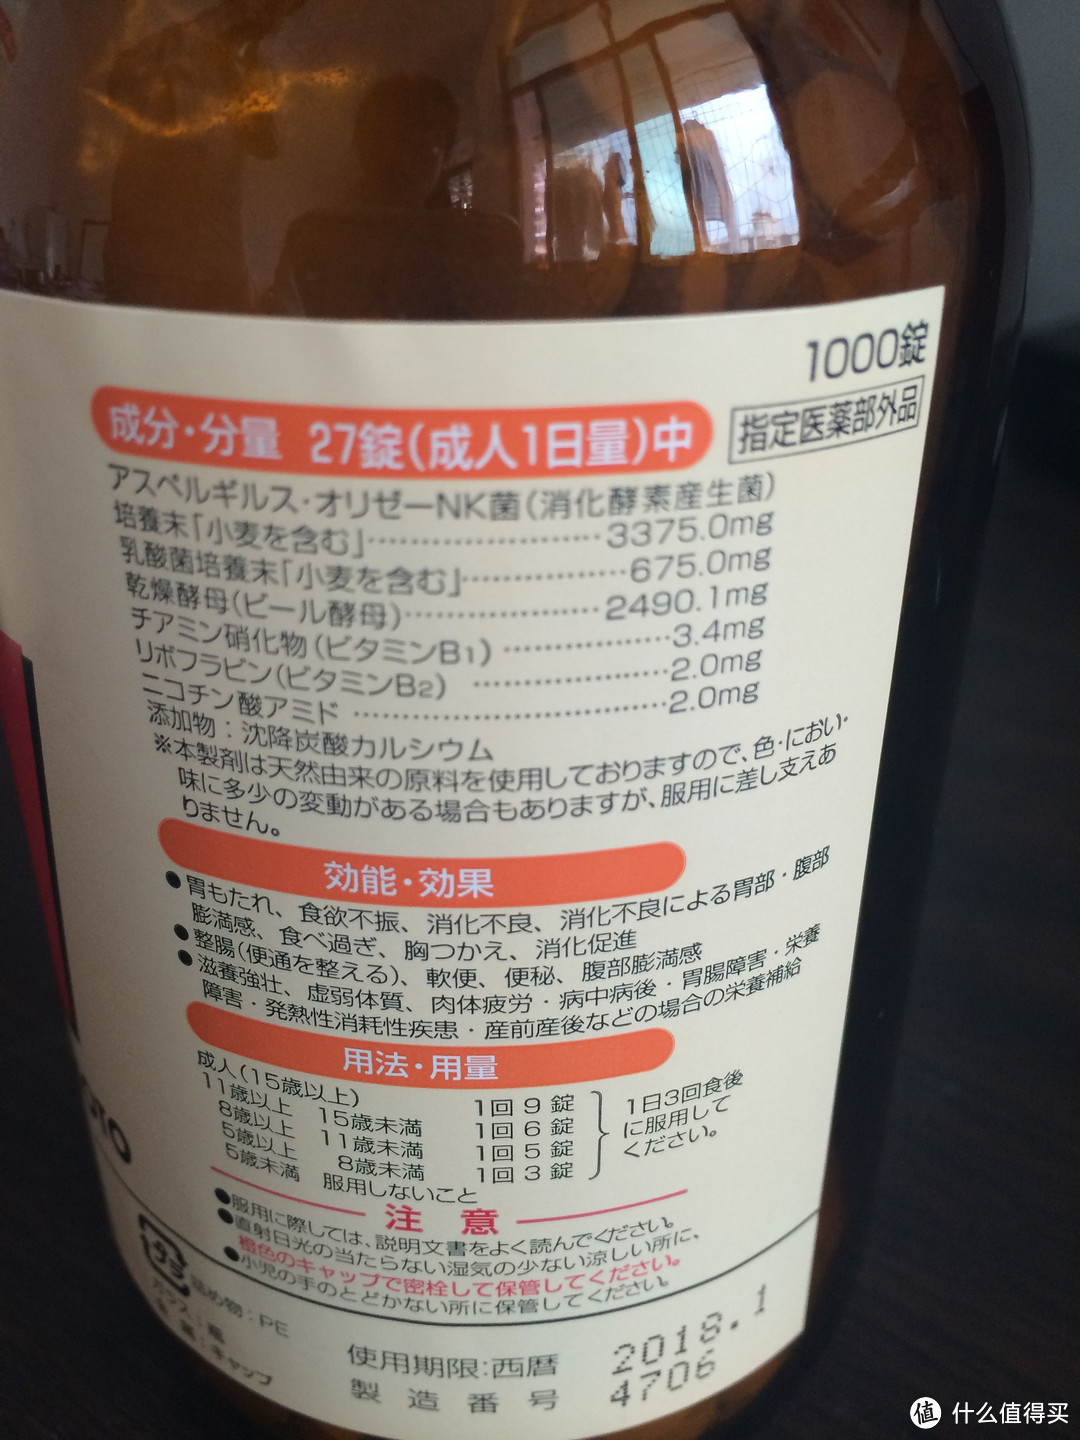 日亚购入 若素 WAKAMOTO 若元整肠锭 清肠剂 常保健乳酸菌